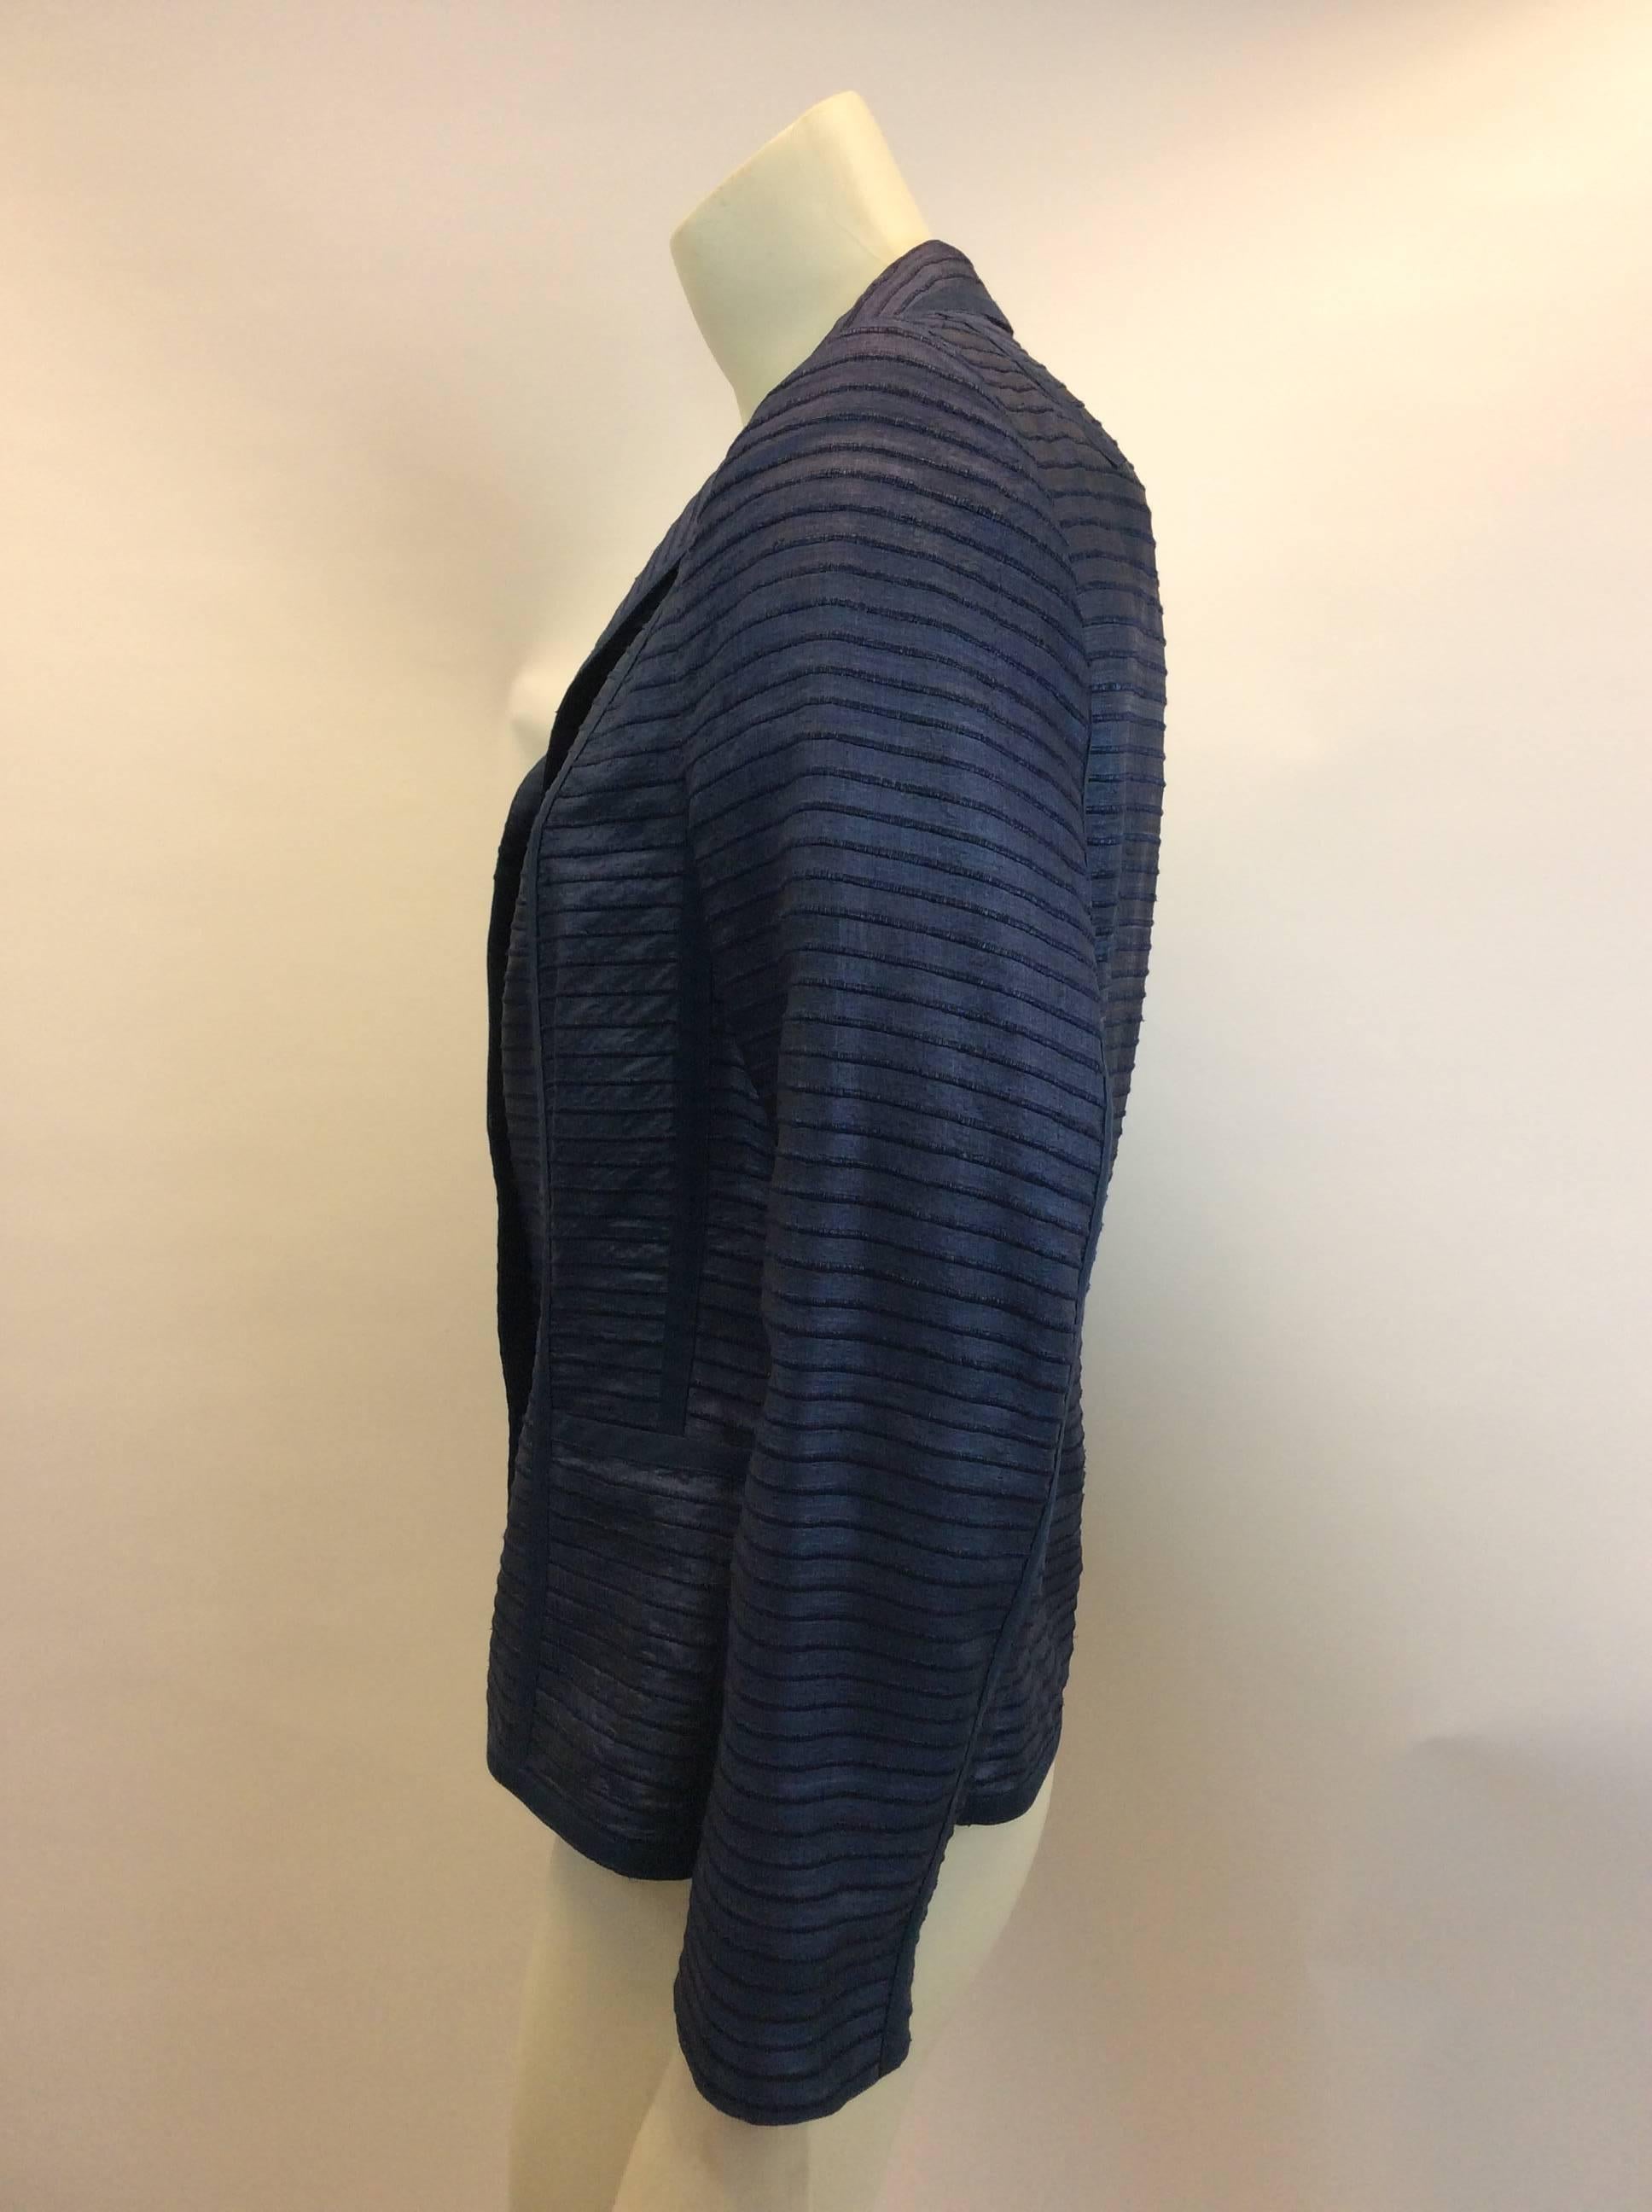 Akris Blue Silk Blazer
Size 8
Made in Switzerland 
$299
100% silk